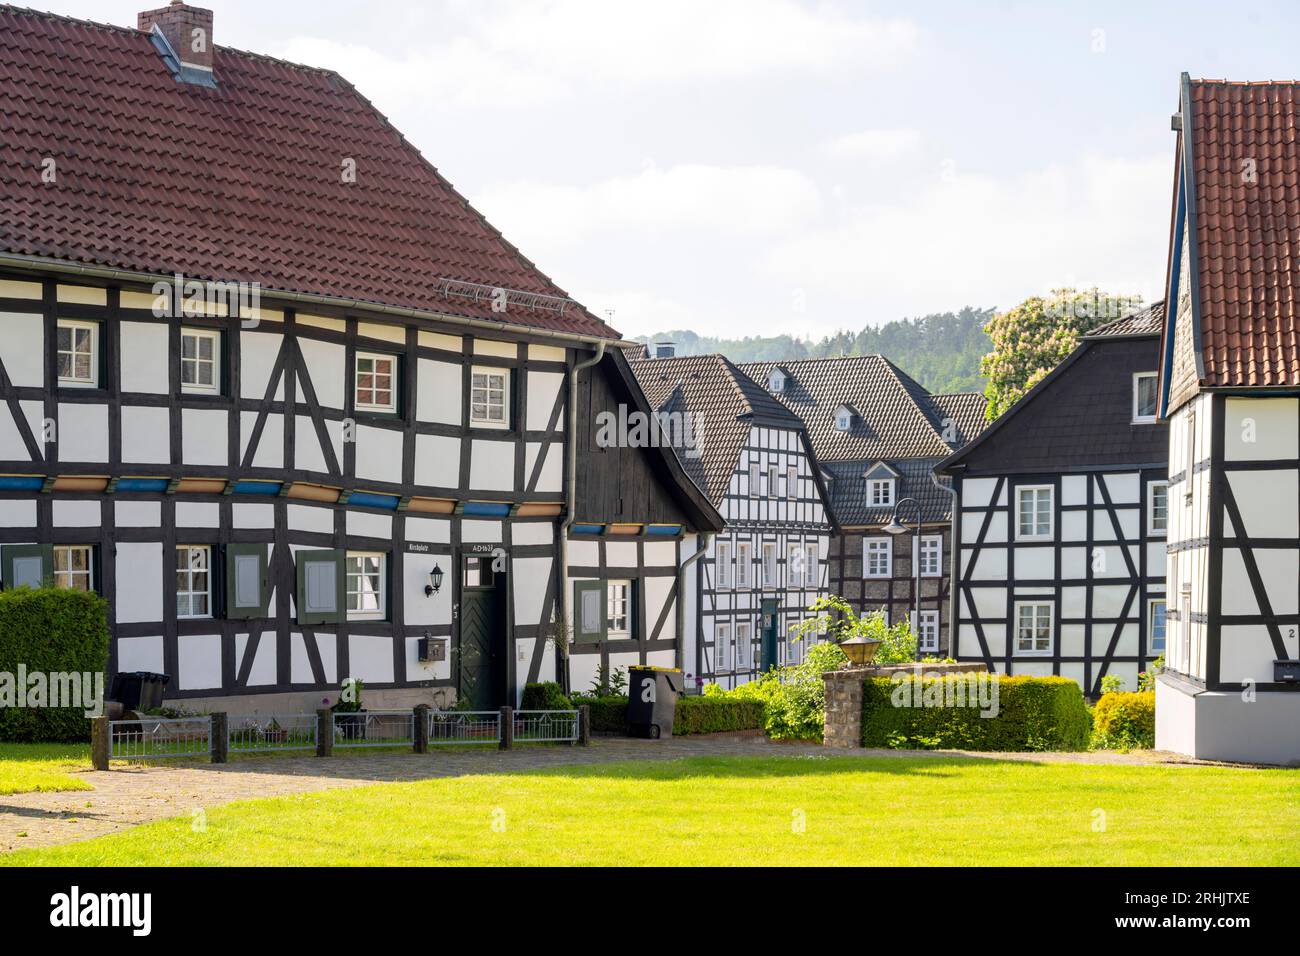 Deutschland, NRW, Märkischer Kreis, Balve, Fachwerkhäuser im nördlichen Bereich des Kirchhofs Stock Photo